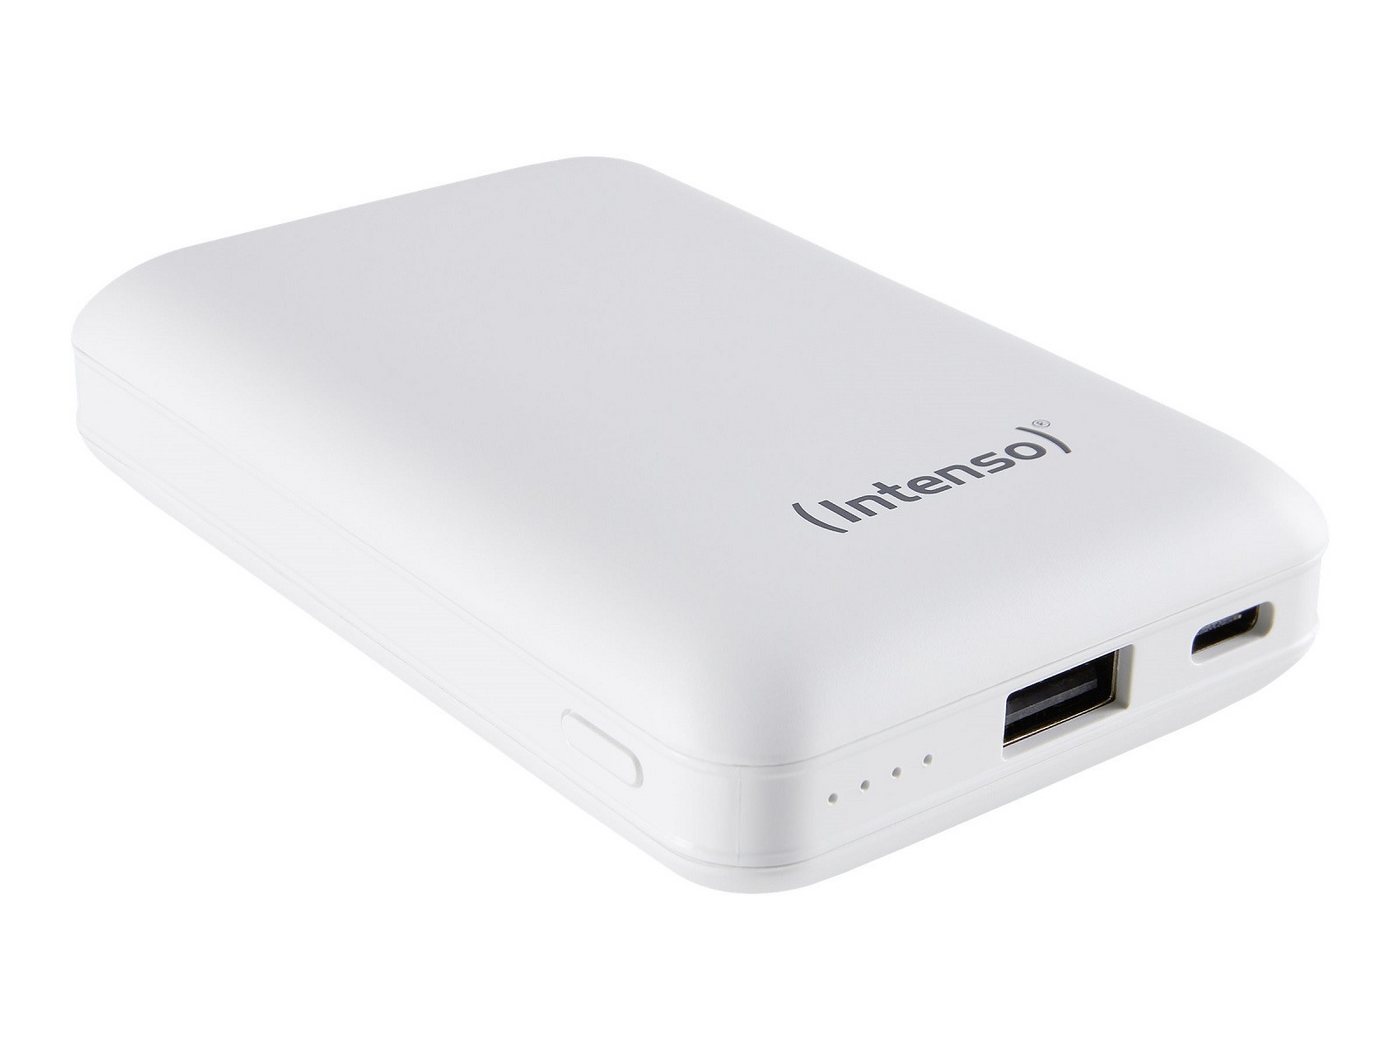 Intenso Intenso Powerbank XC10000 - 10000 mAh - 3 A - USB, USB-C Powerbank XC10000 10000 mAh (1 St), Kurzschlussschutz, Überladungsschutz, 4 LED-Kontrollleuchten von Intenso